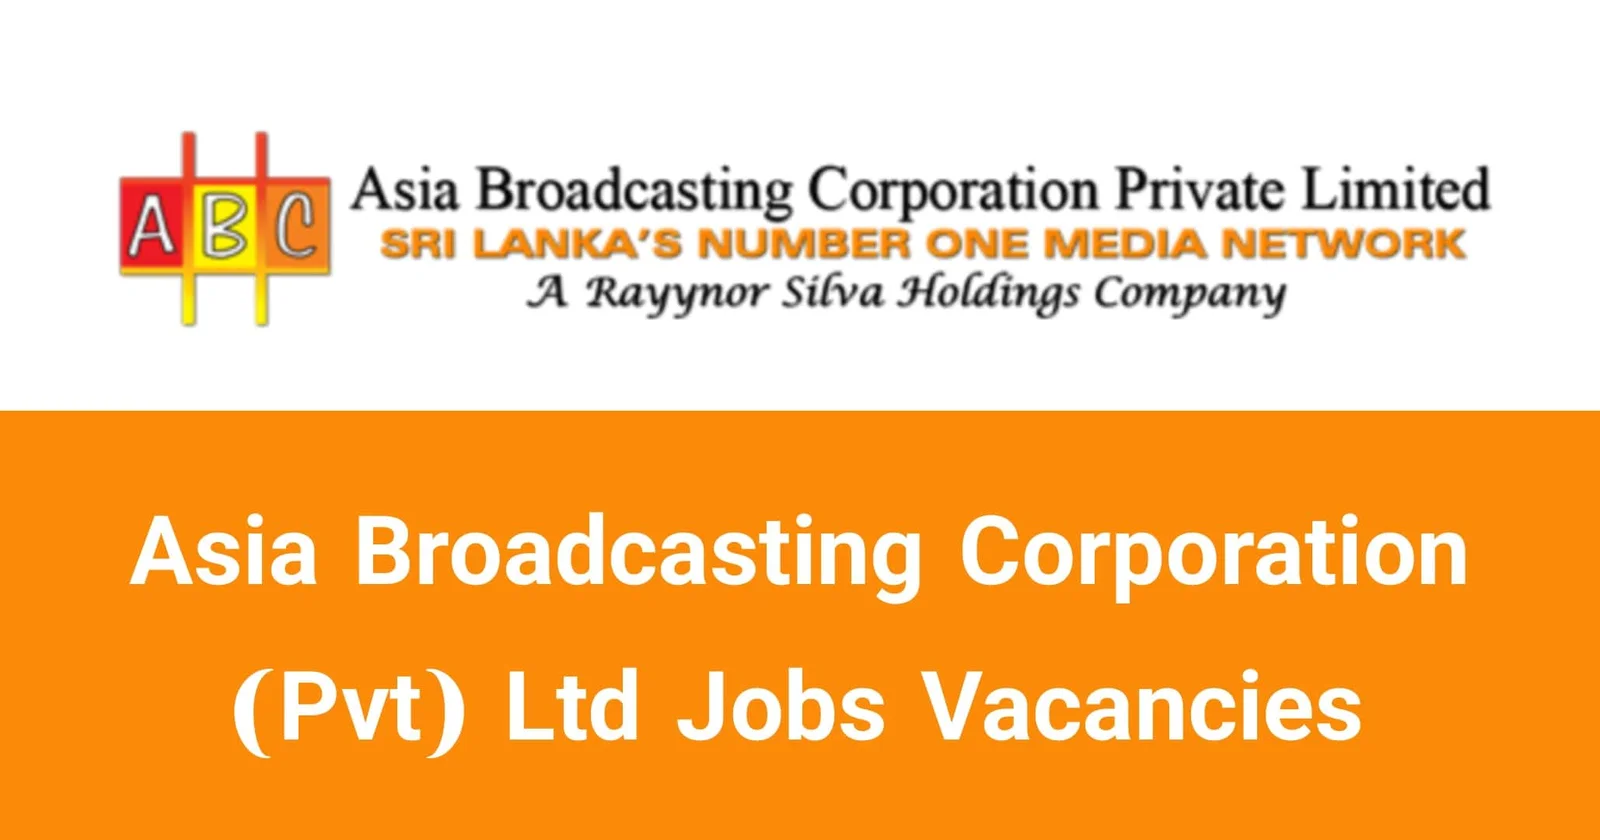 Asia Broadcasting Corporation (Pvt) Ltd Jobs Vacancies